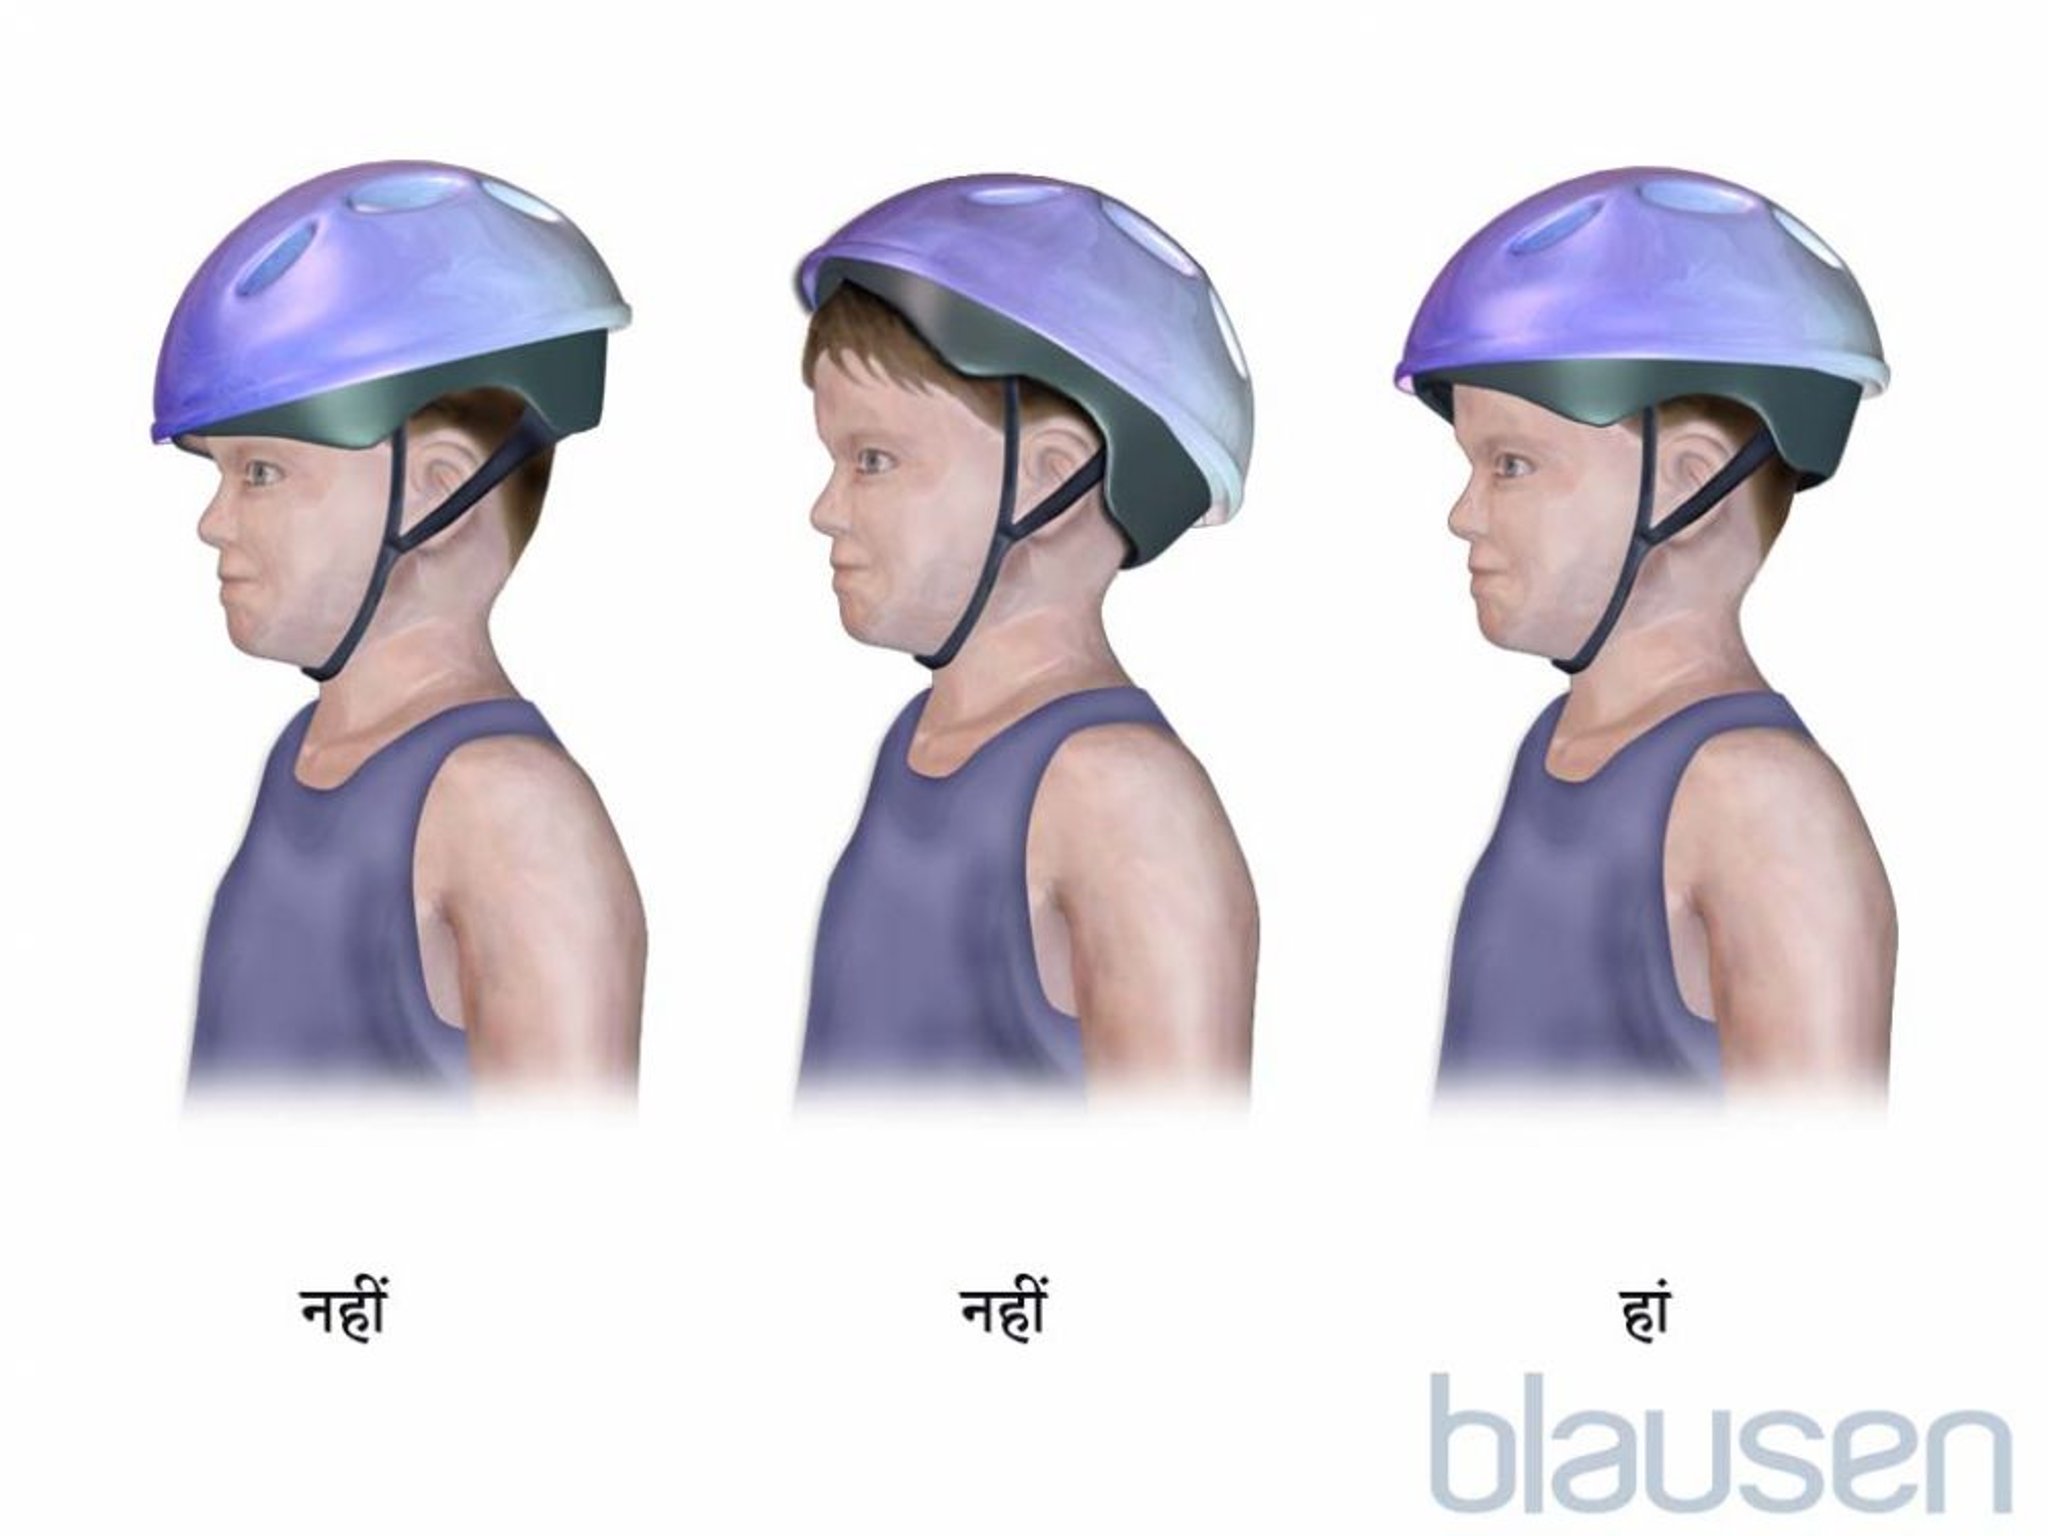 बच्चे के लिए साइकल के हेलमेट का सही इस्तेमाल